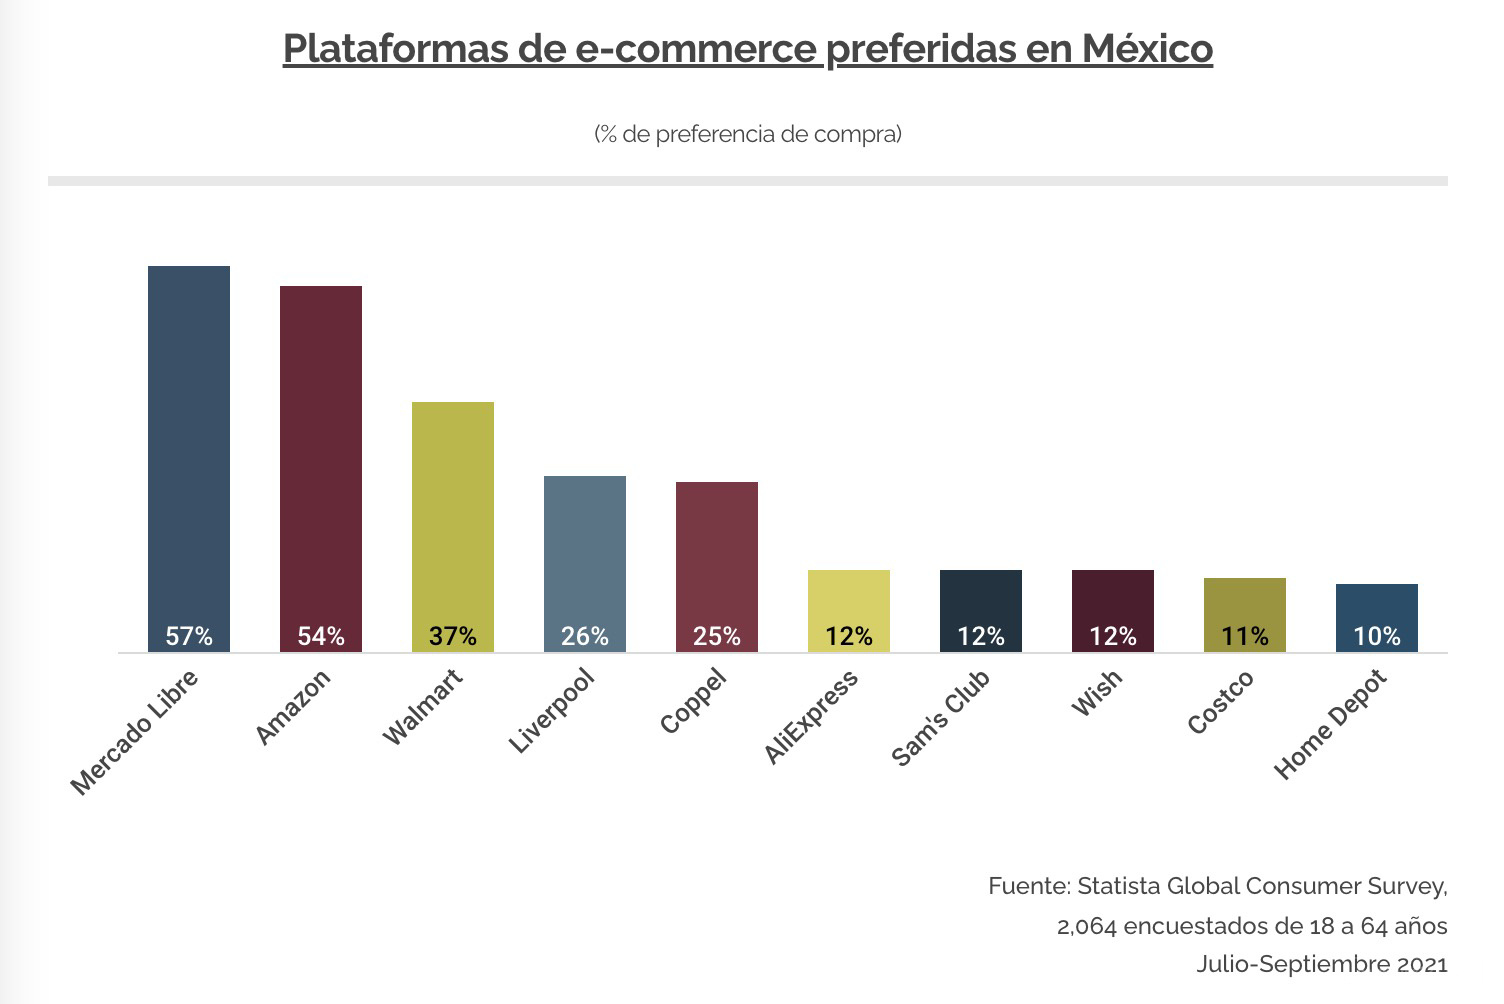 跨境电商物流美客多击败亚马逊、沃尔玛！拿下墨西哥电商平台TOP1